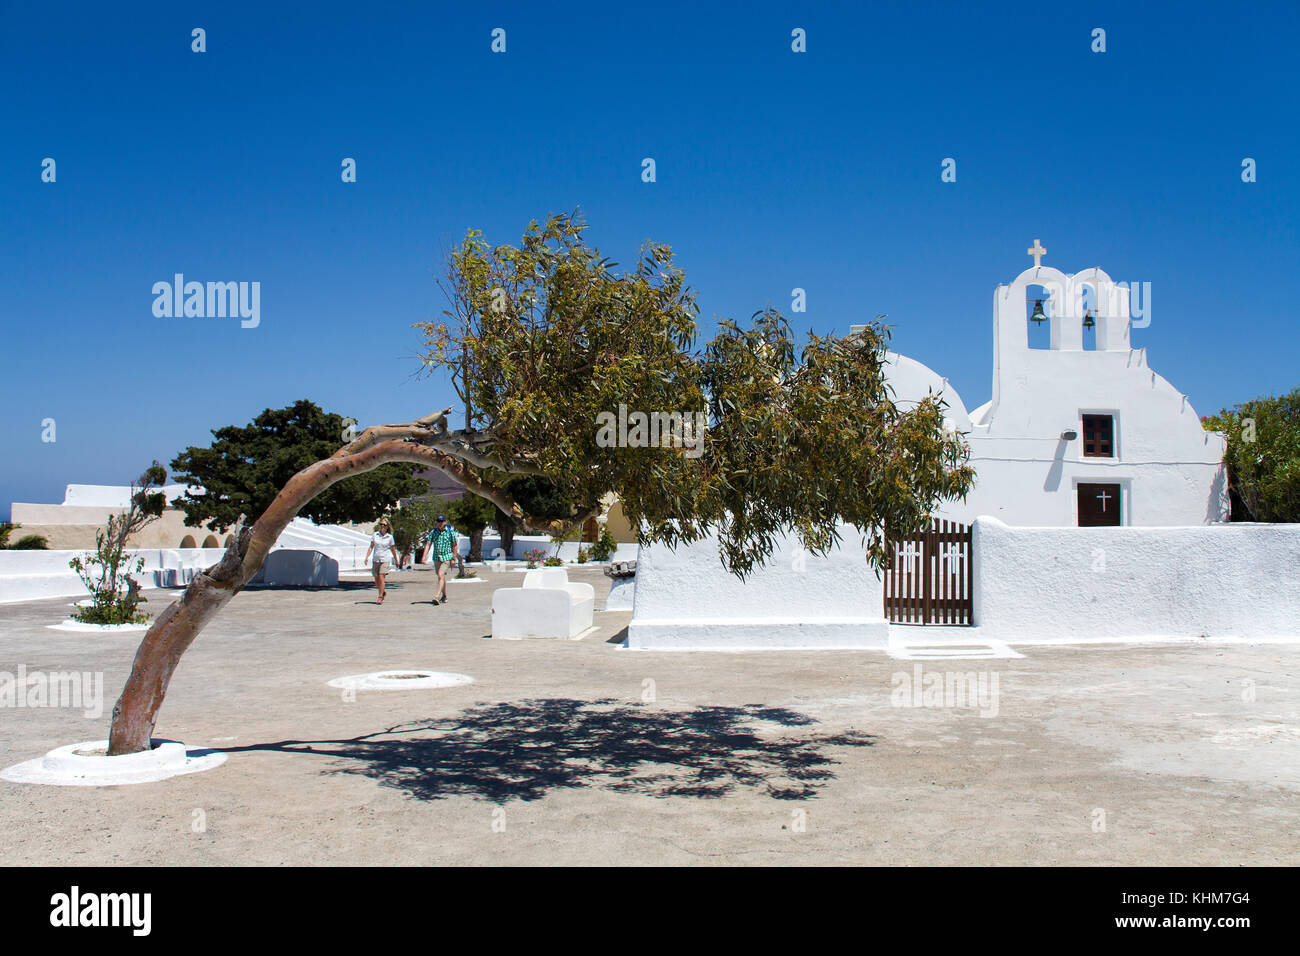 Vento dodger in corrispondenza di una piccola cappella ortodossa, villaggio di Oia - Santorini, Cicladi, Egeo, Grecia Foto Stock